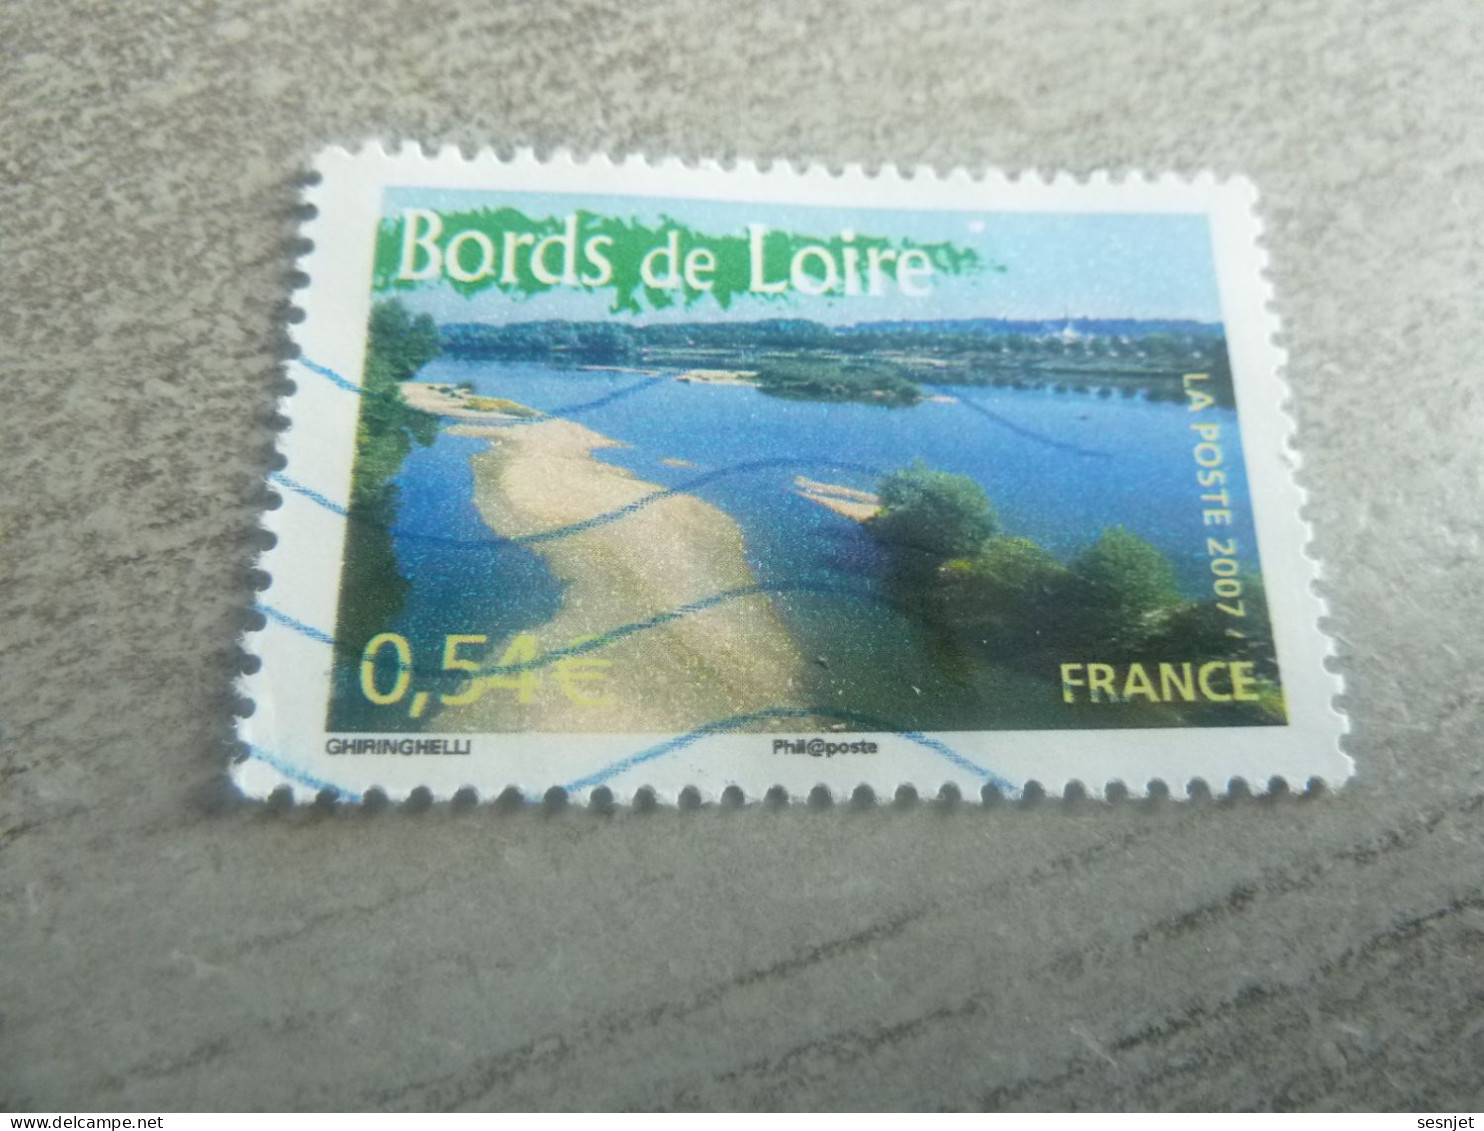 Les Bords De Loire - Portrait De Région - La France à Voir - 0.54 € - Yt 4017 - Multicolore - Oblitéré - Année 2007 - - Oblitérés